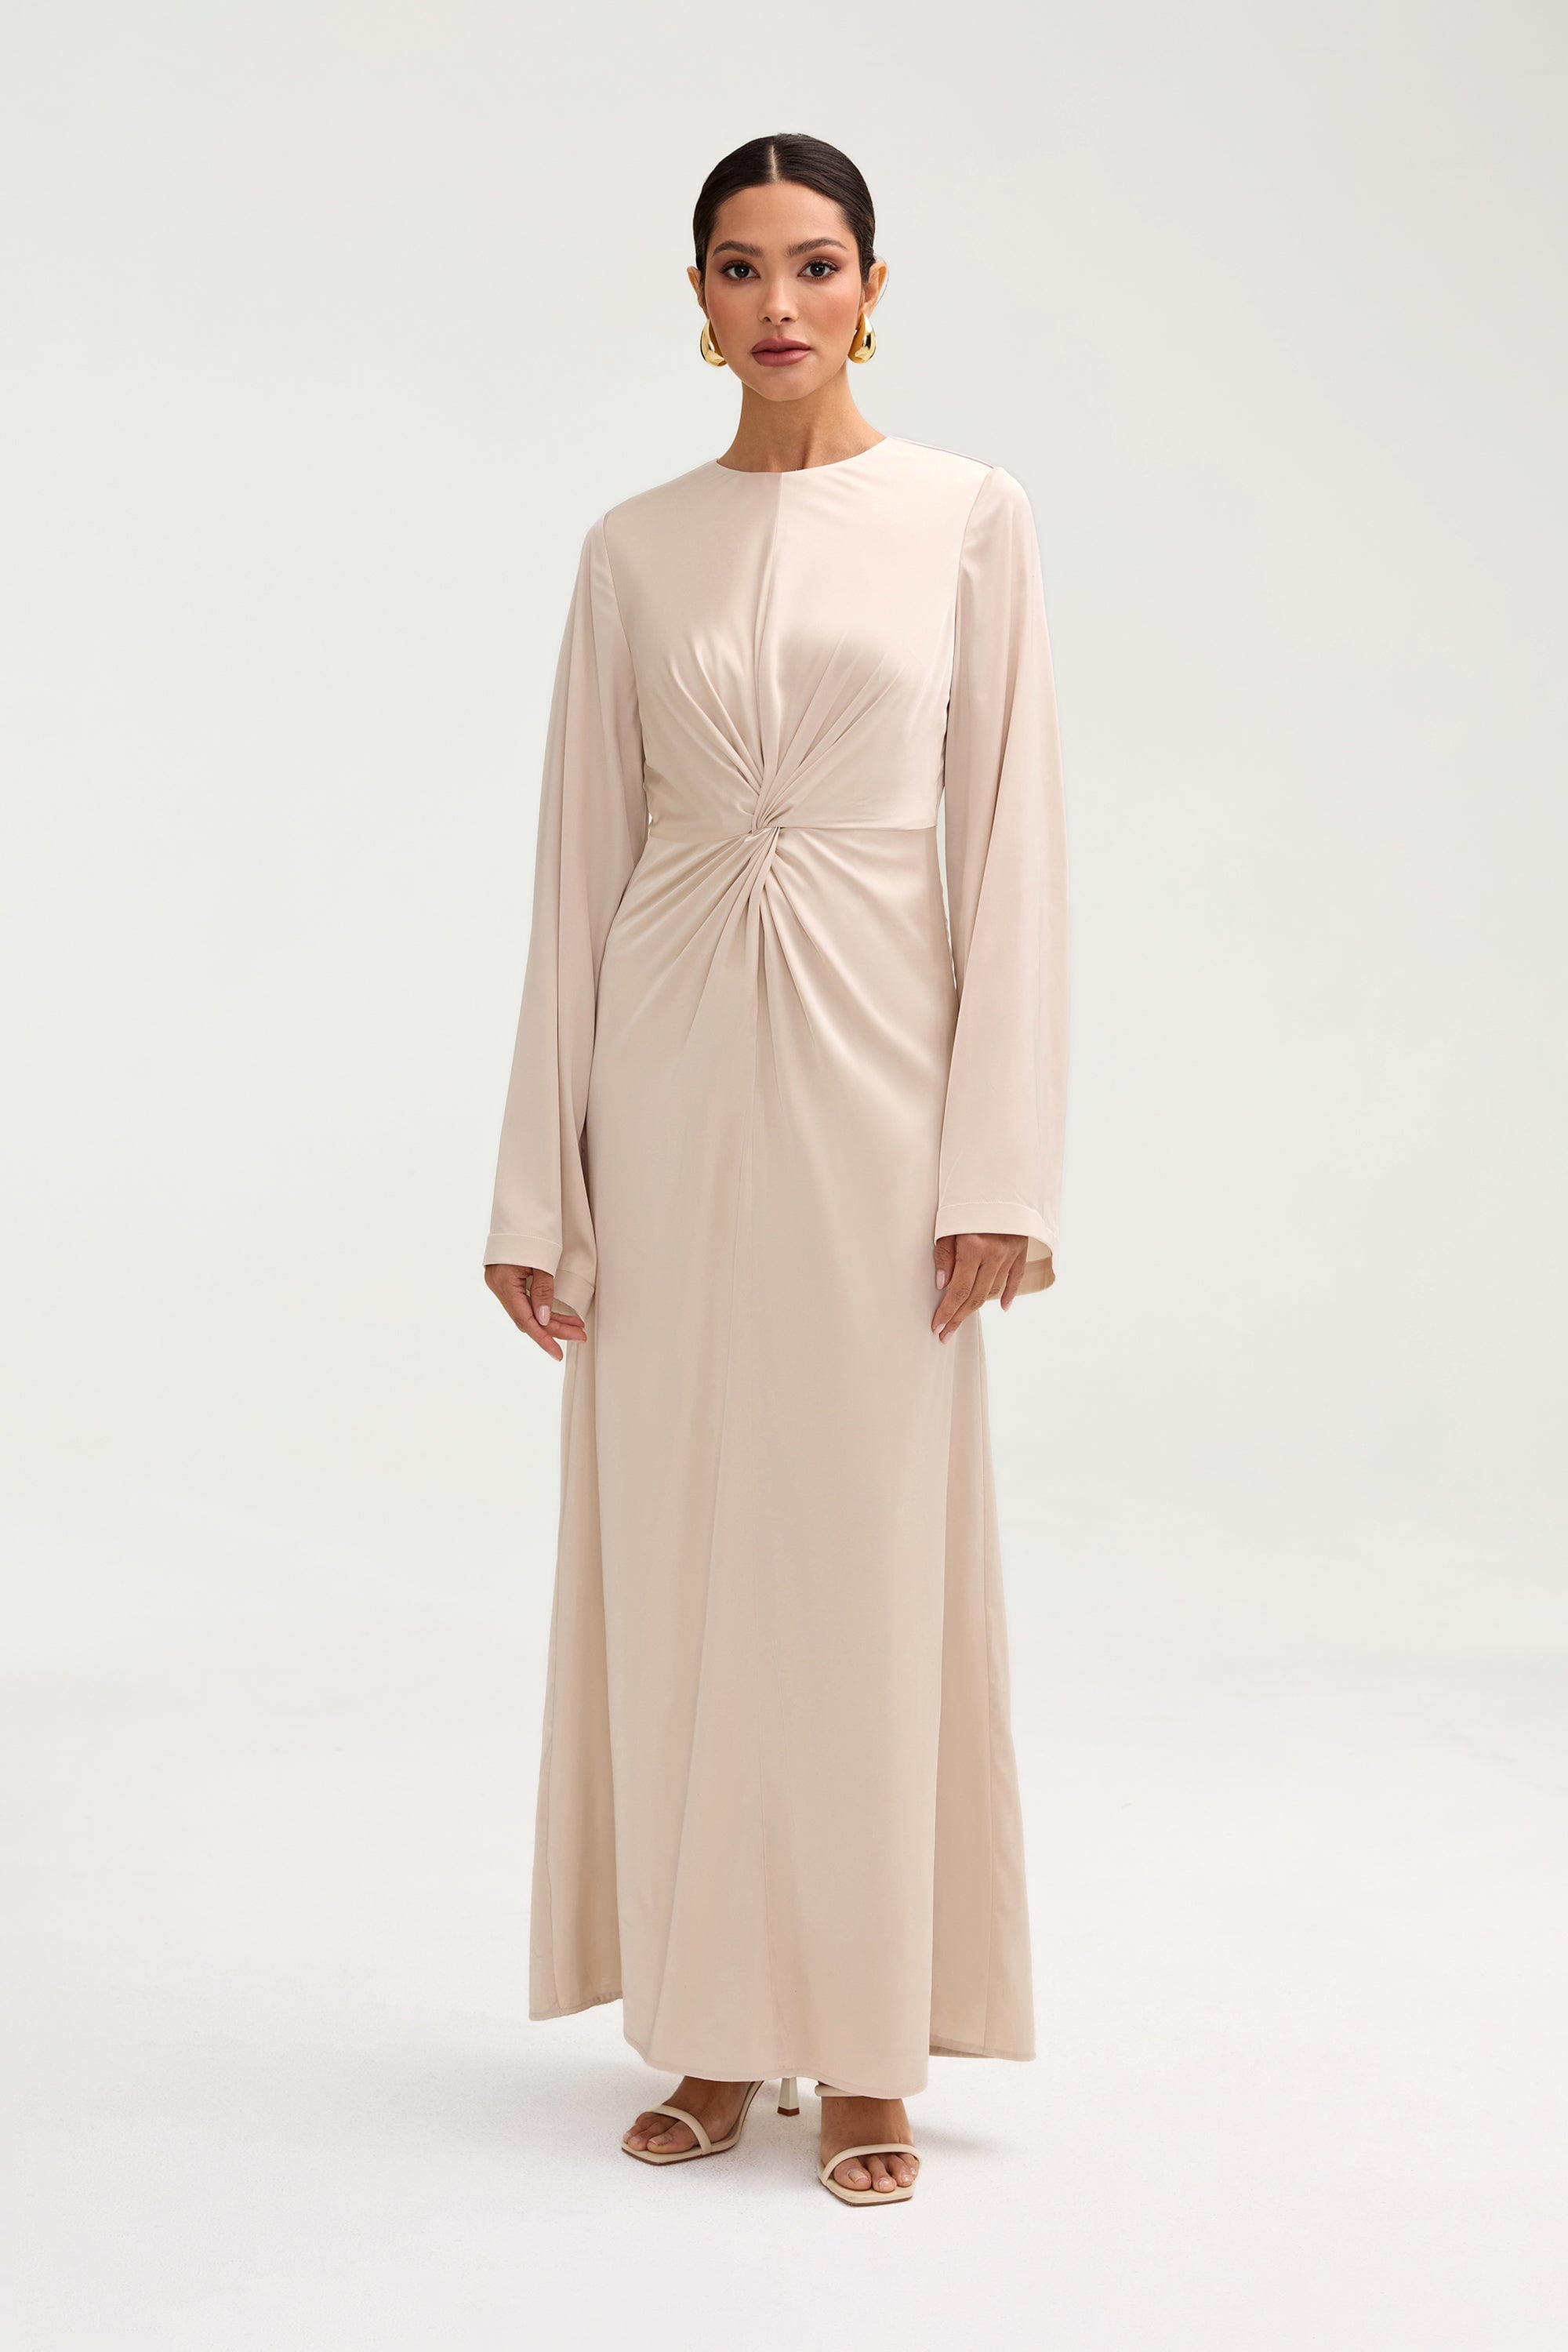 Duha Satin Twist Front Maxi Dress - Cloud Clothing Veiled 